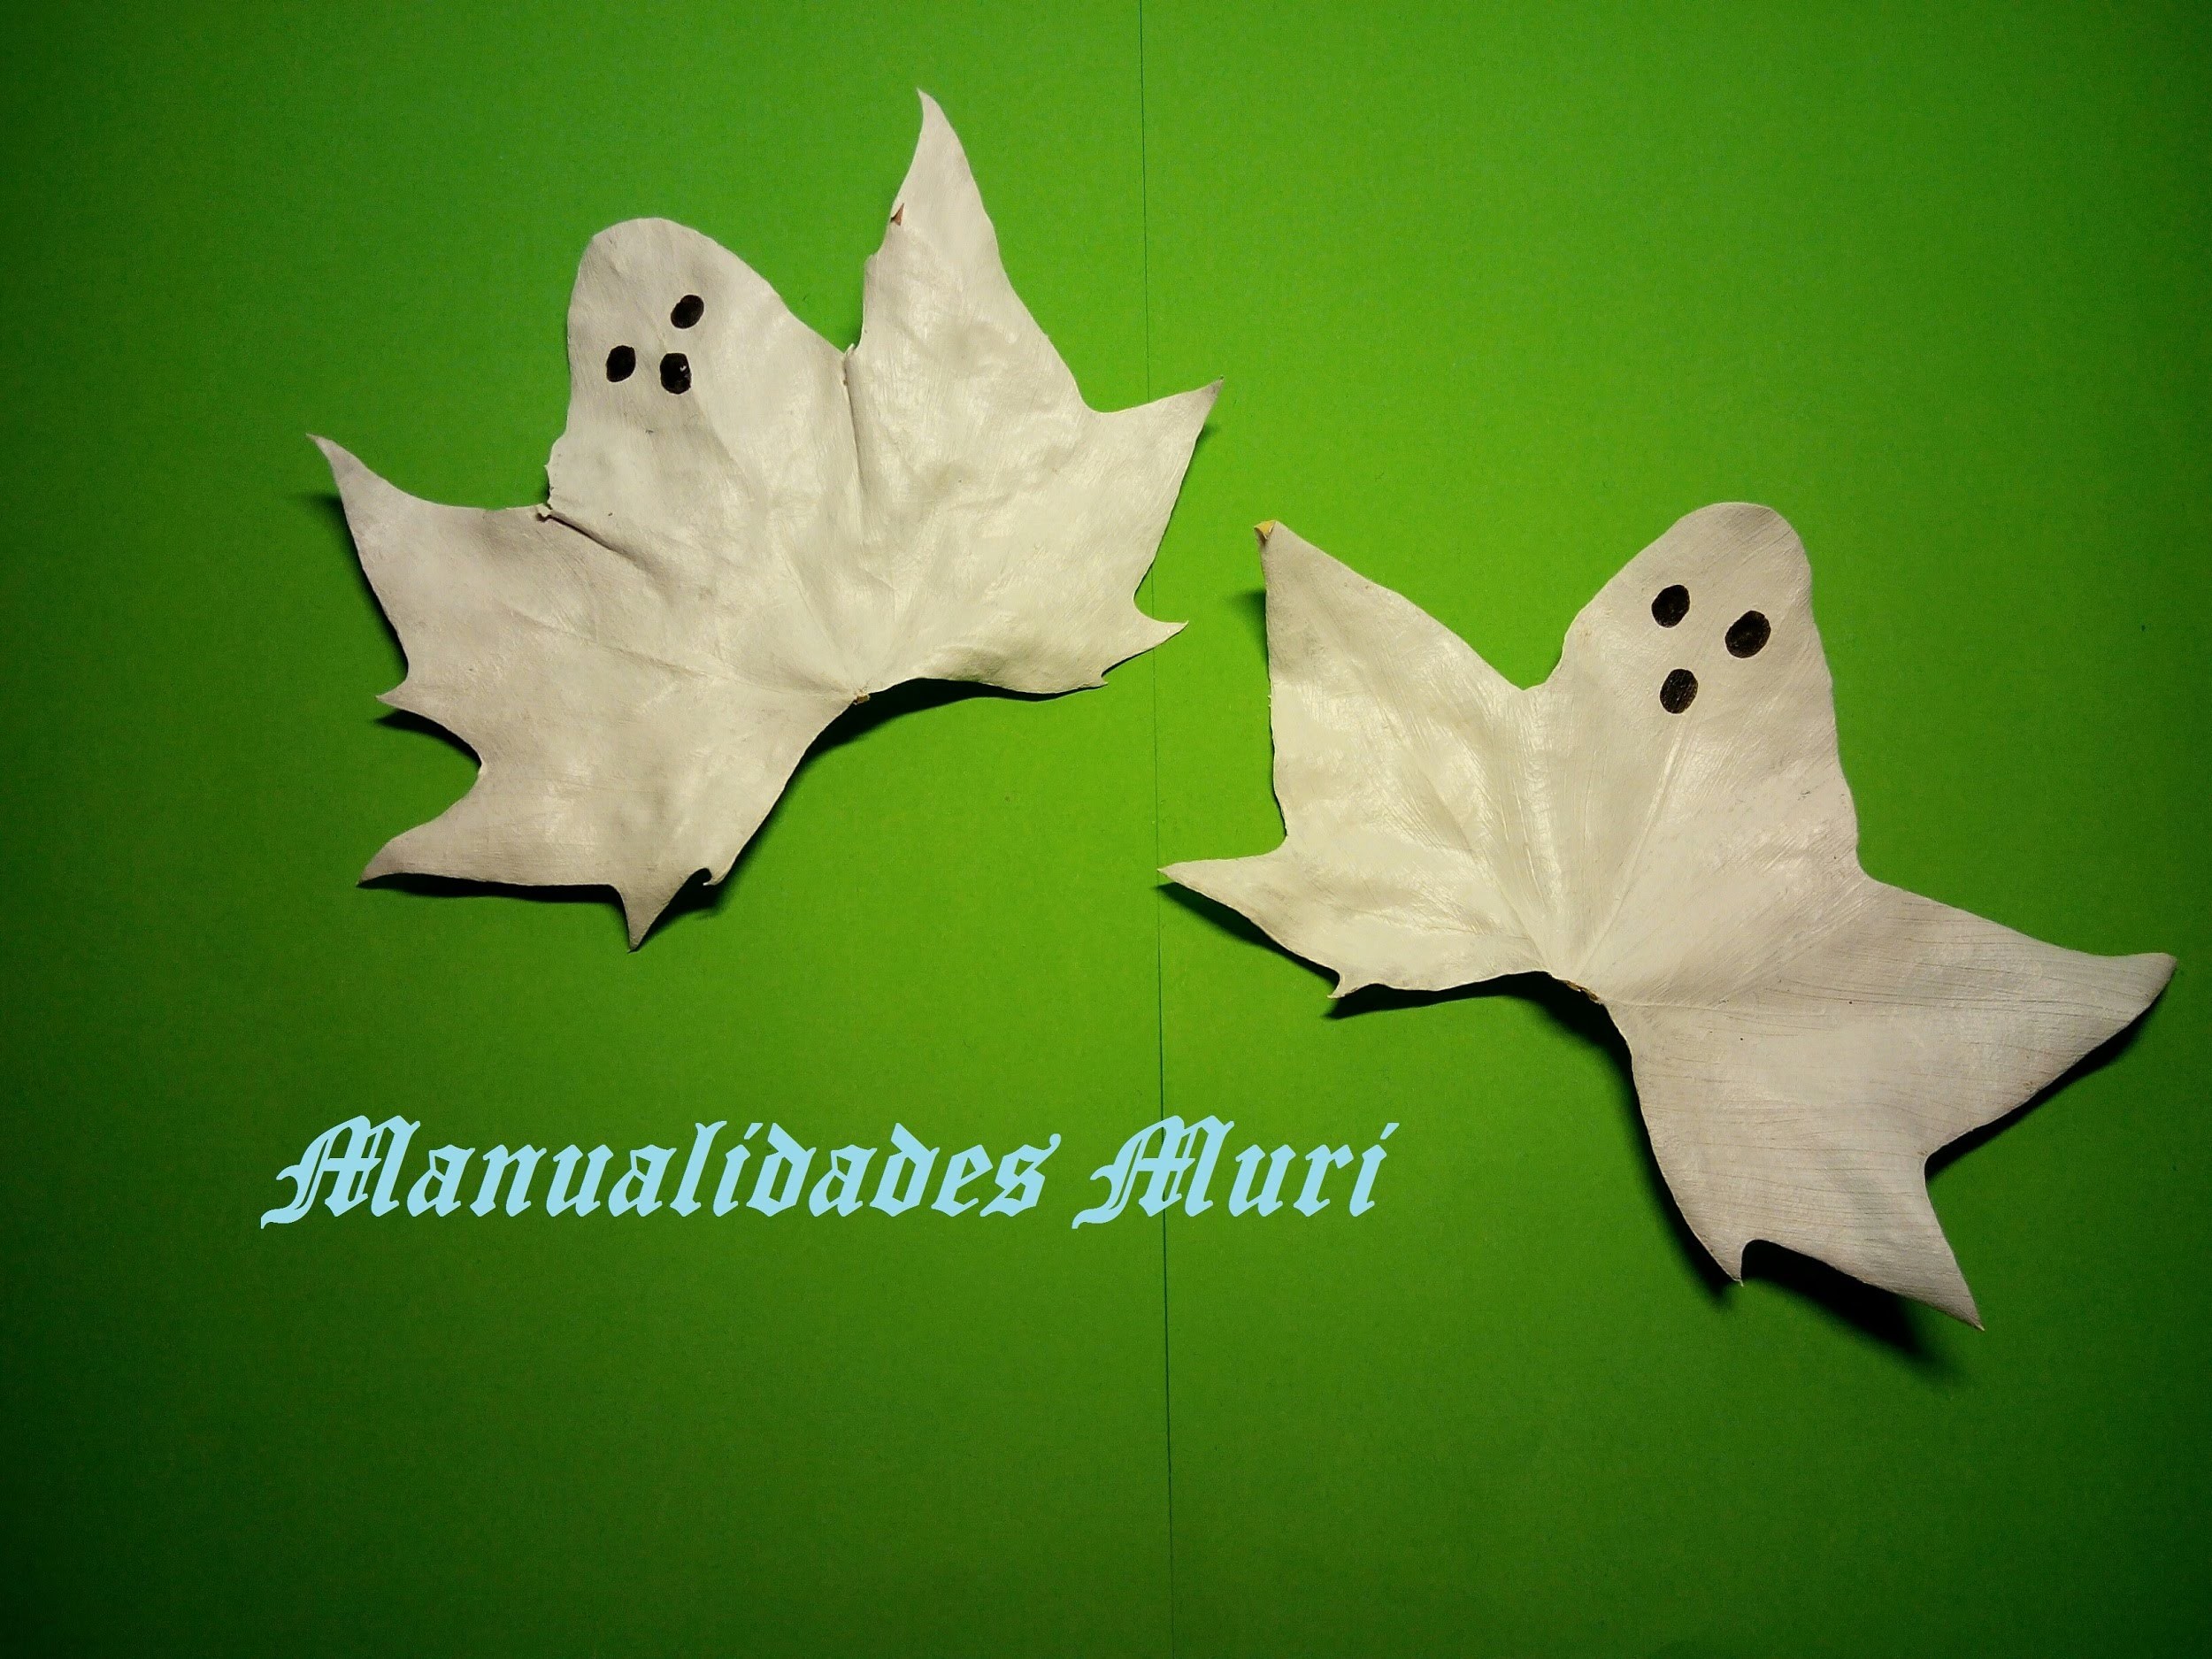 Manualidades. Fantasmas con hojas de árbol, muy fáciles para Halloween